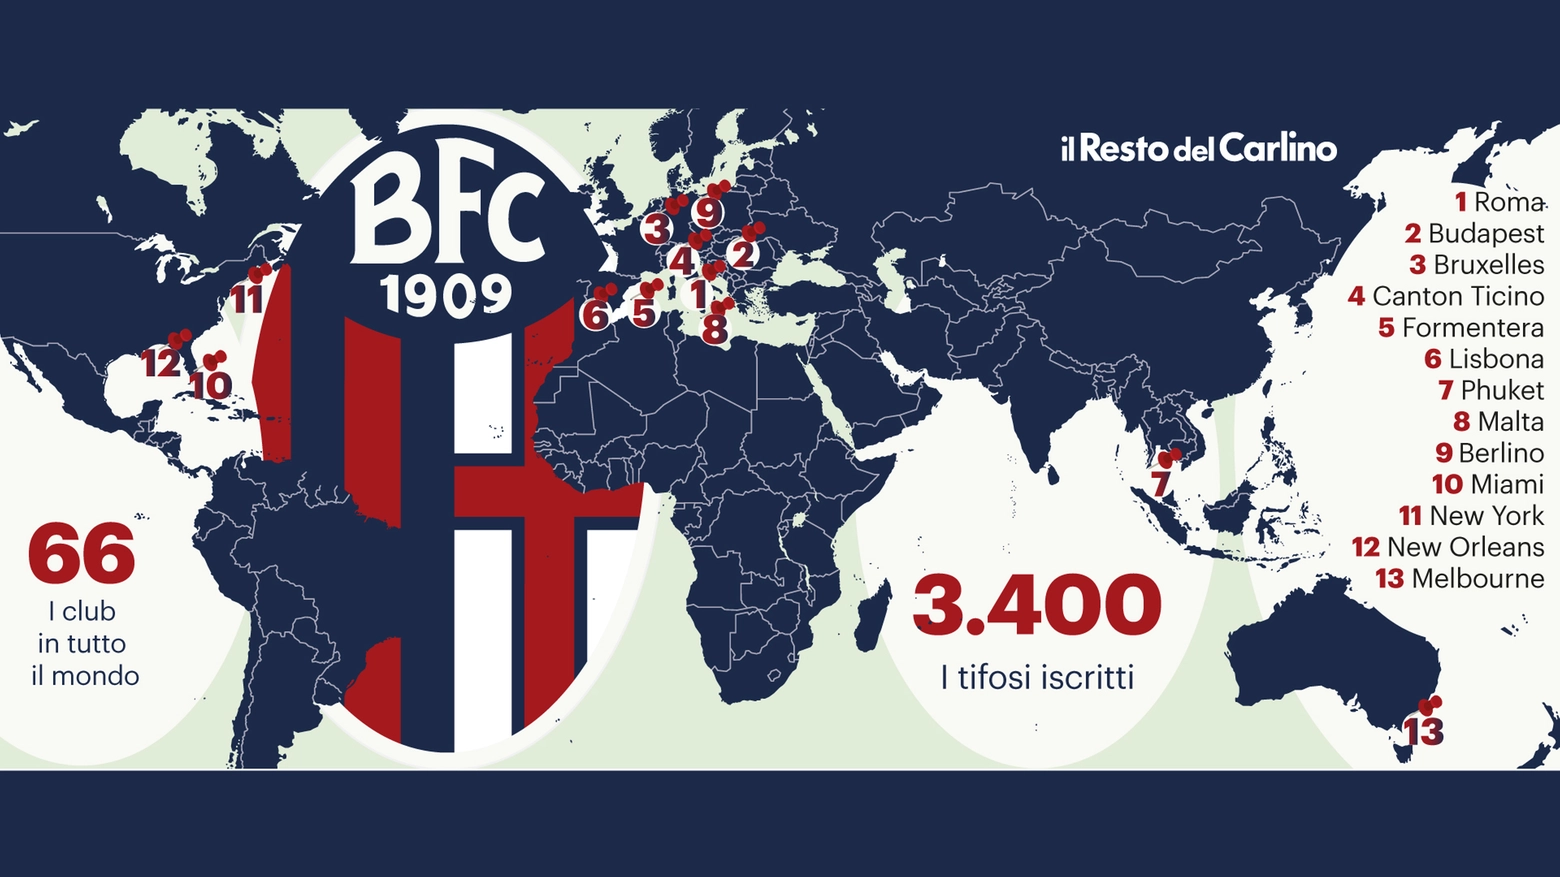 Una passione da far girare il mondo: tutti i club rossoblù sparsi per il globo